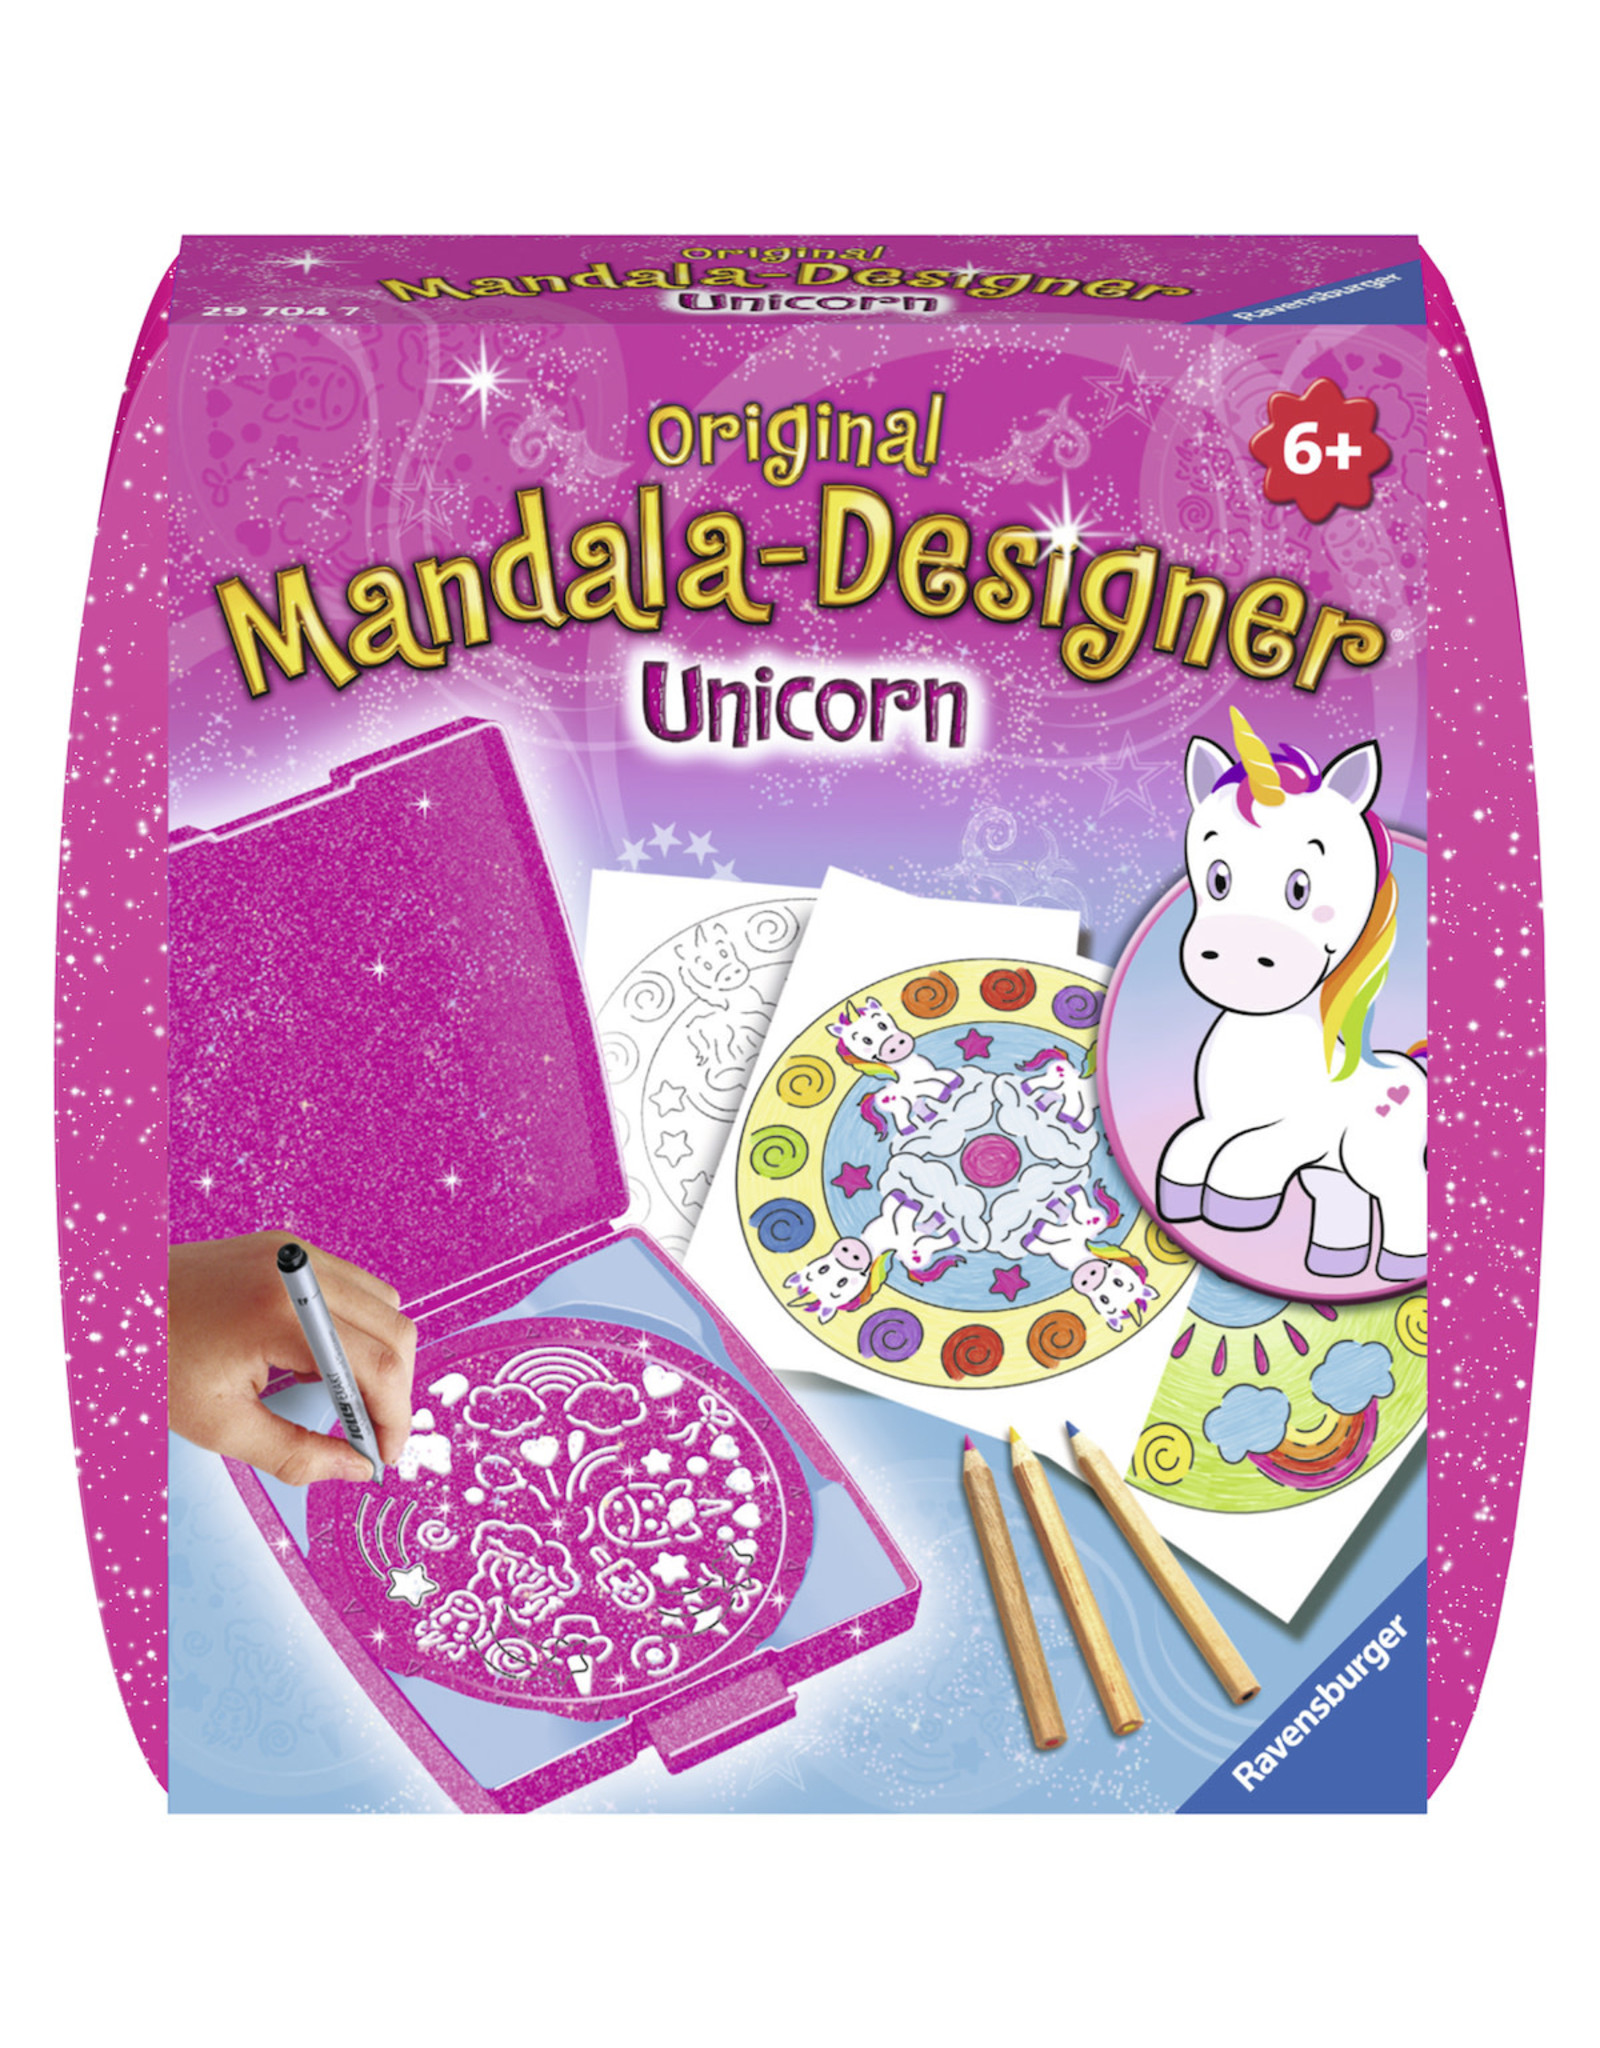 Ravensburger Ravensburger Mandala-Designer Mini  297047 Unicorn